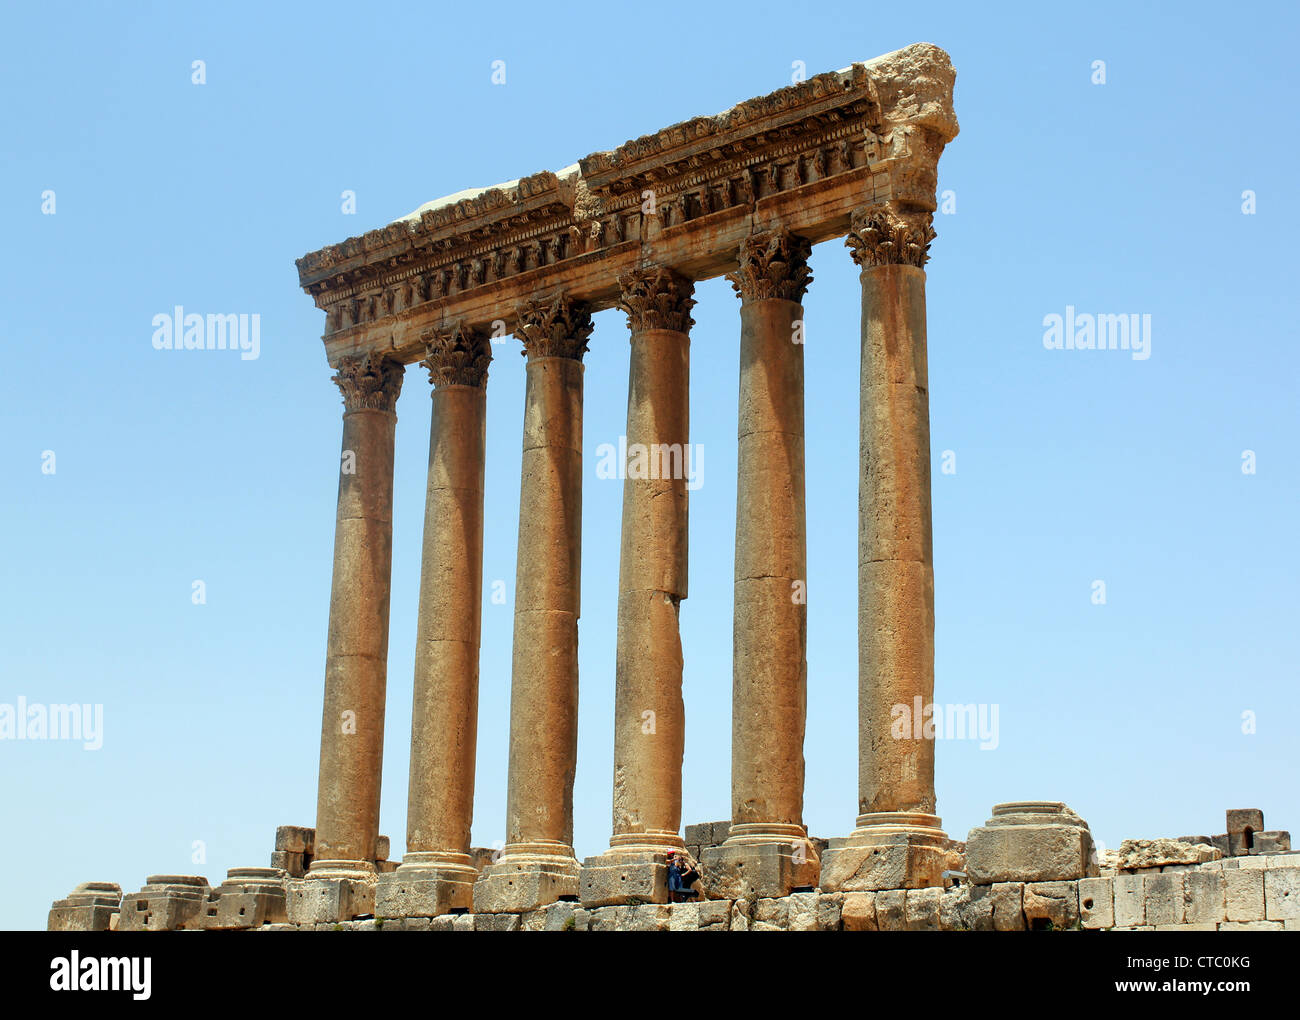 Las ruinas romanas de Baalbek, Líbano Foto de stock